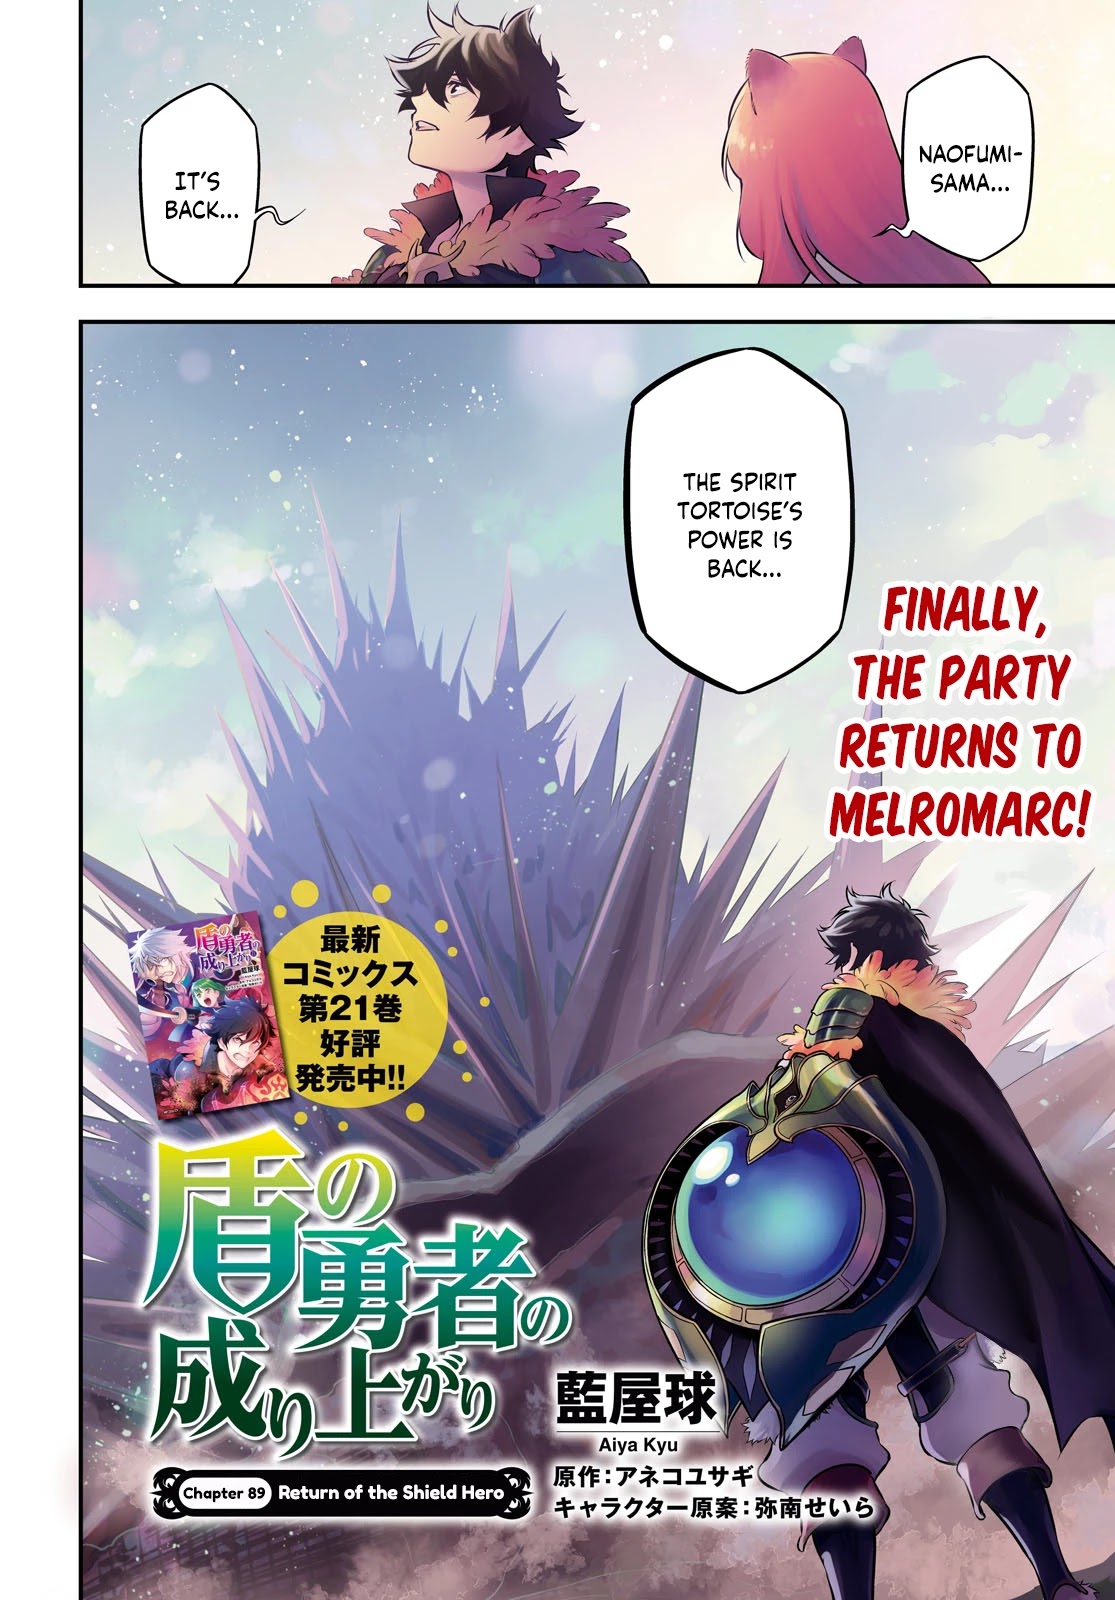 Manga Volume 3, The Rising of the Shield Hero Wiki